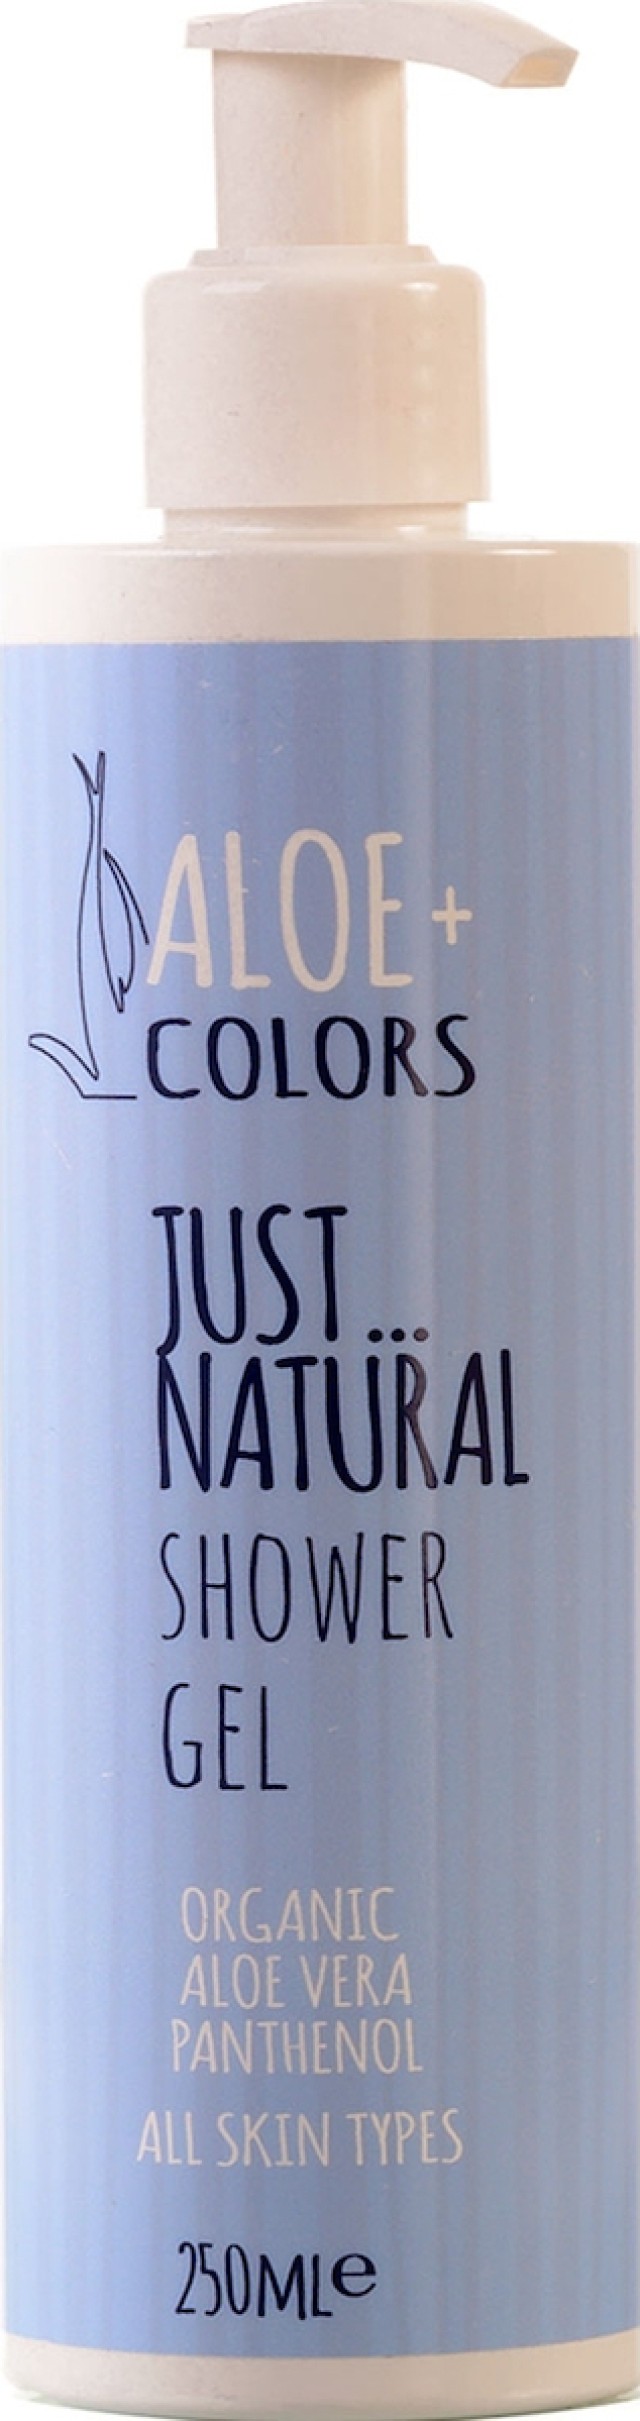 ALOE+ COLORS Just Natural Shower Gel, Απαλό Αφρόλουτρο με Άρωμα Φρεσκάδας 250ml